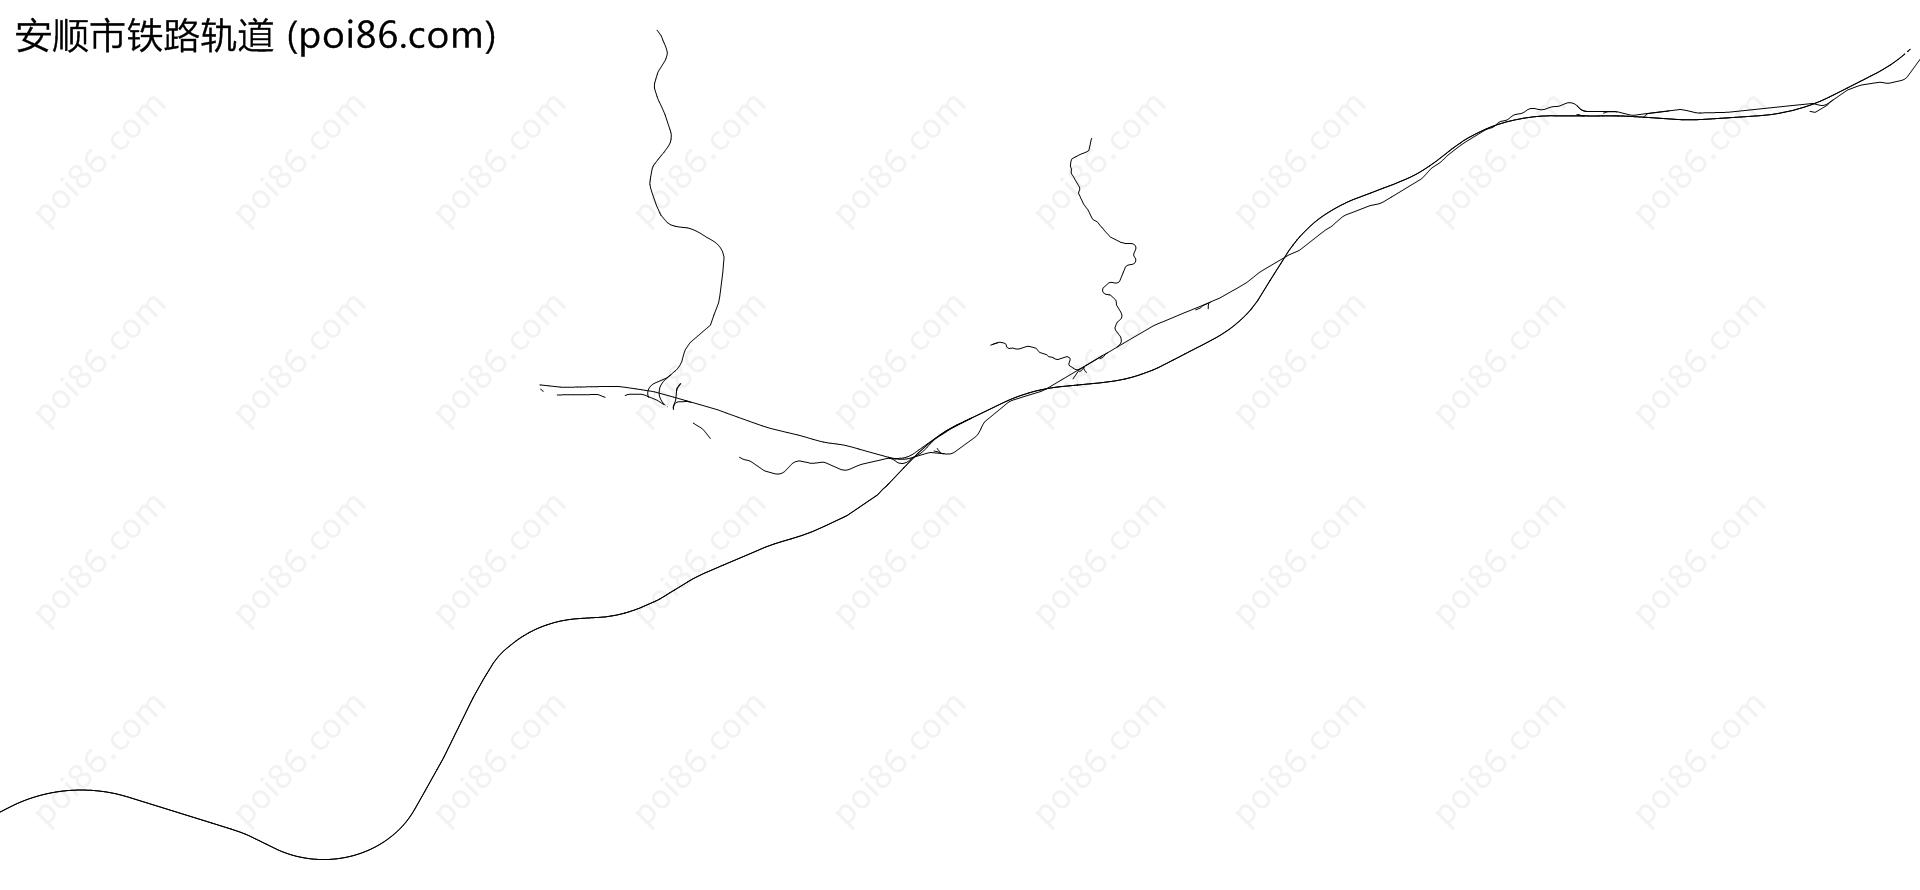 安顺市铁路轨道地图